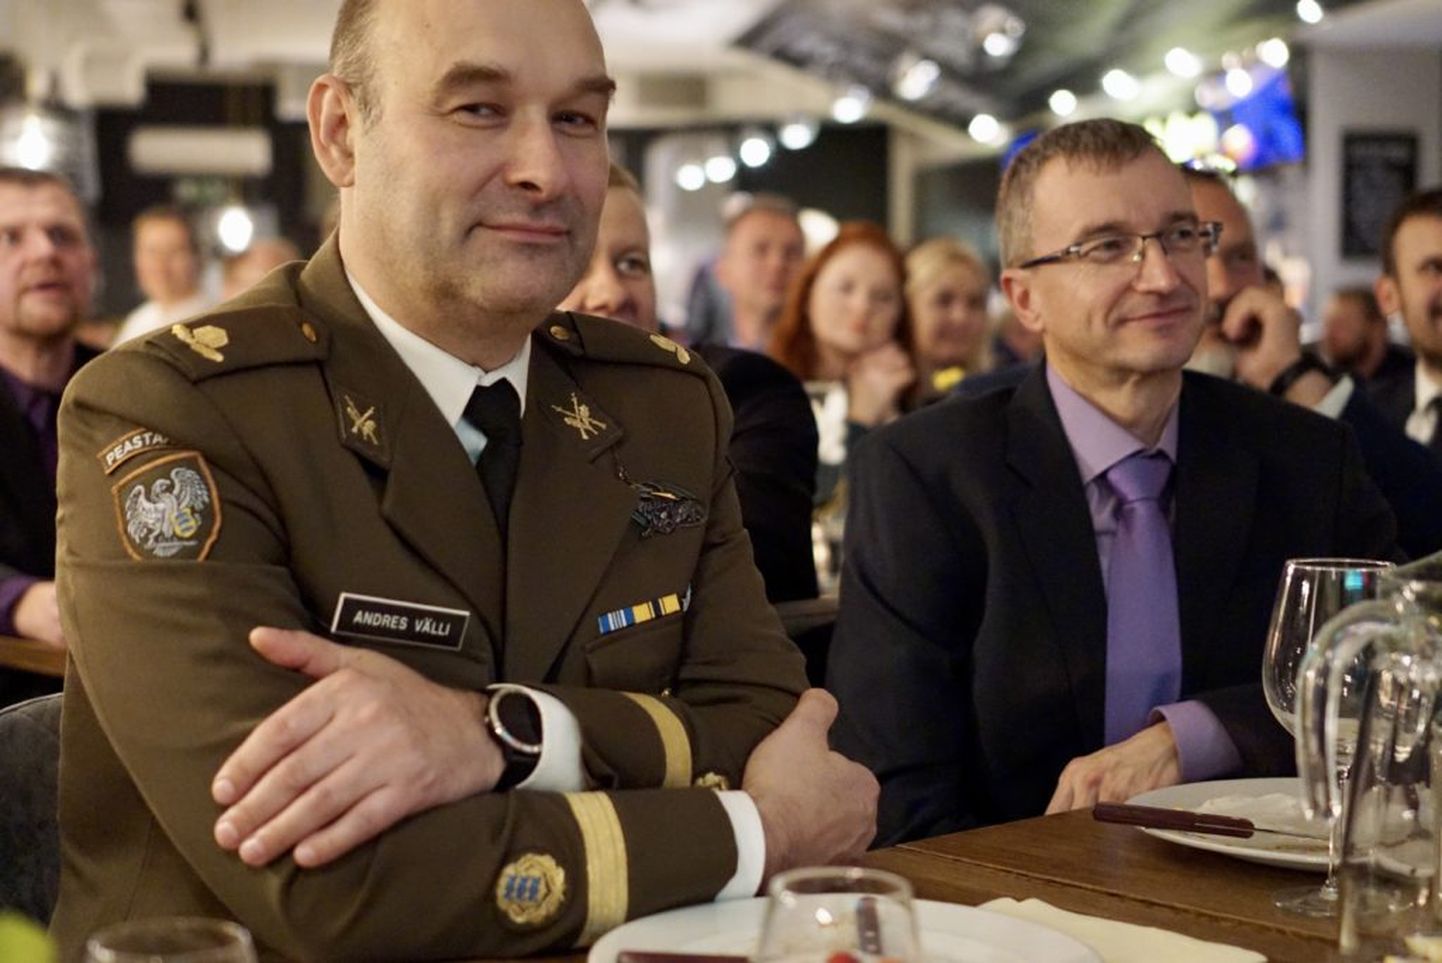 Kaitseliidu Tallinna malevast Lääne malevat juhtima siirduv major Andres Välli (vasakul) on vabatahtlikuna liige Roosna-Alliku üksikkompaniis.